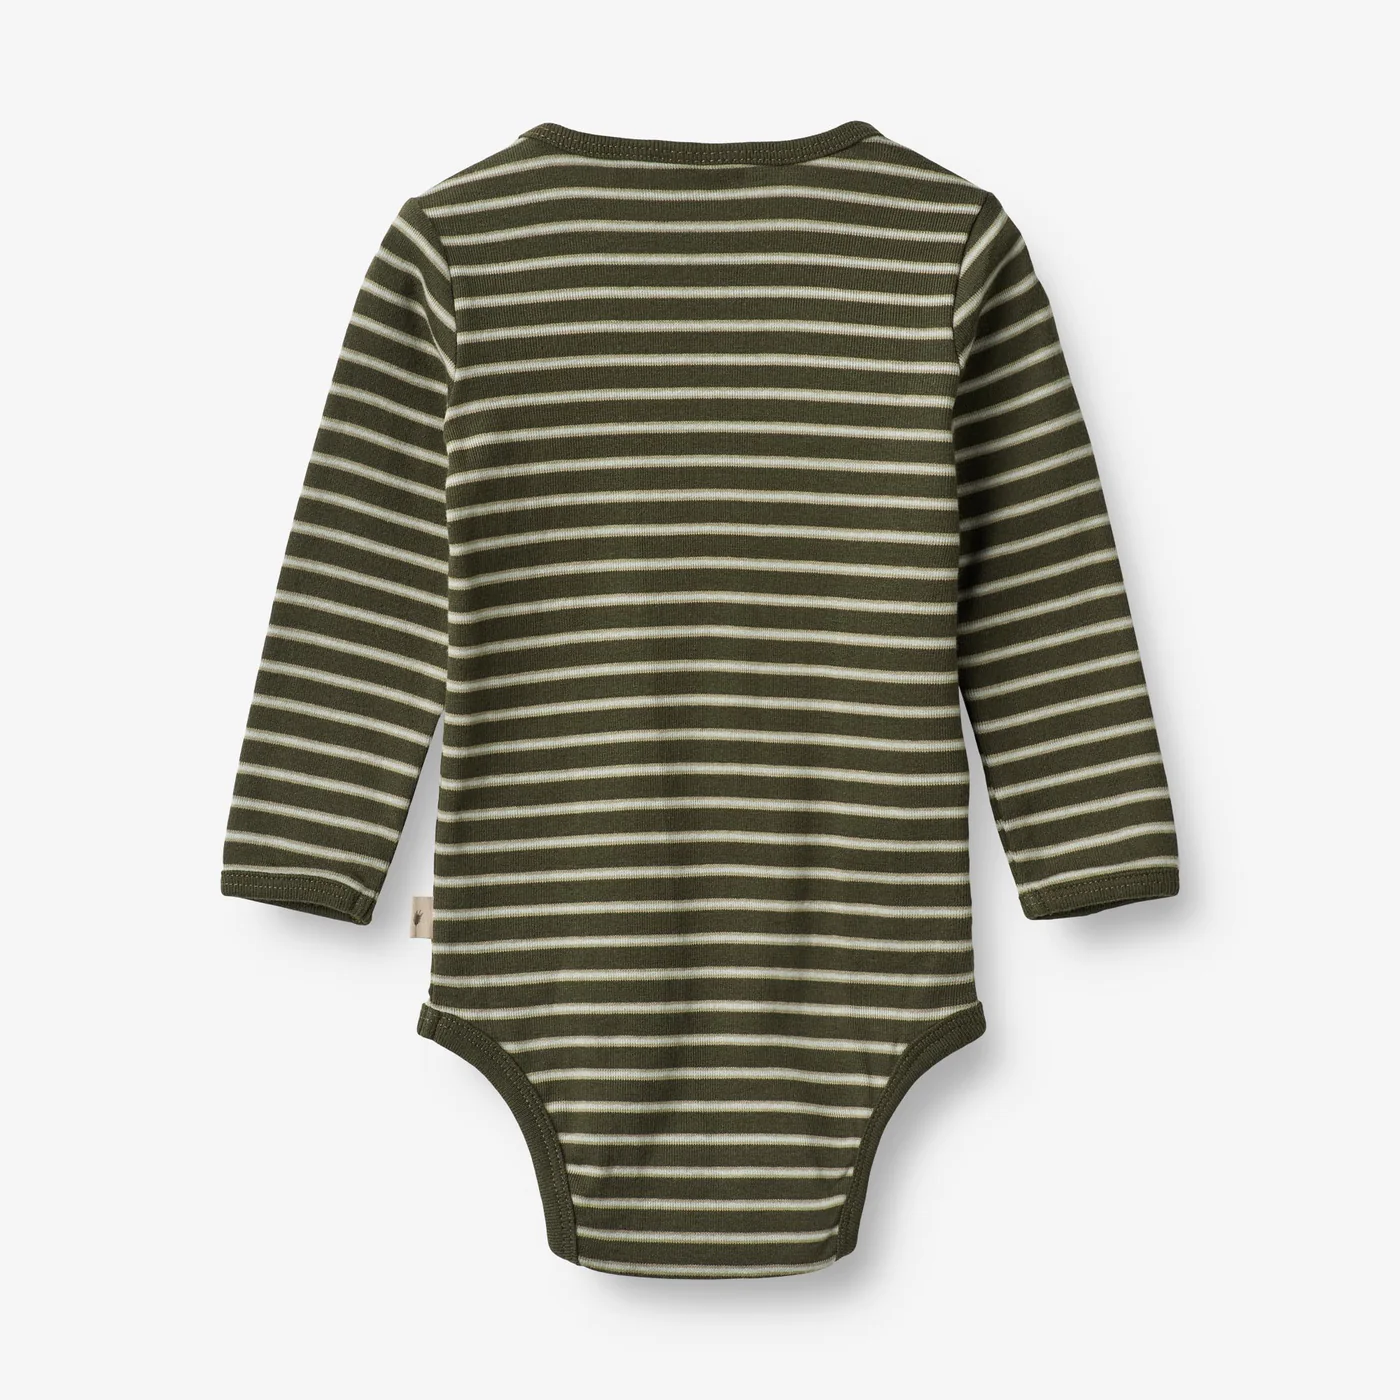 Produktbild: wheat - Body Berti - dark green stripe von wheat im Onlineshop von dasMikruli - Dein Shop für Baby Erstausstattung